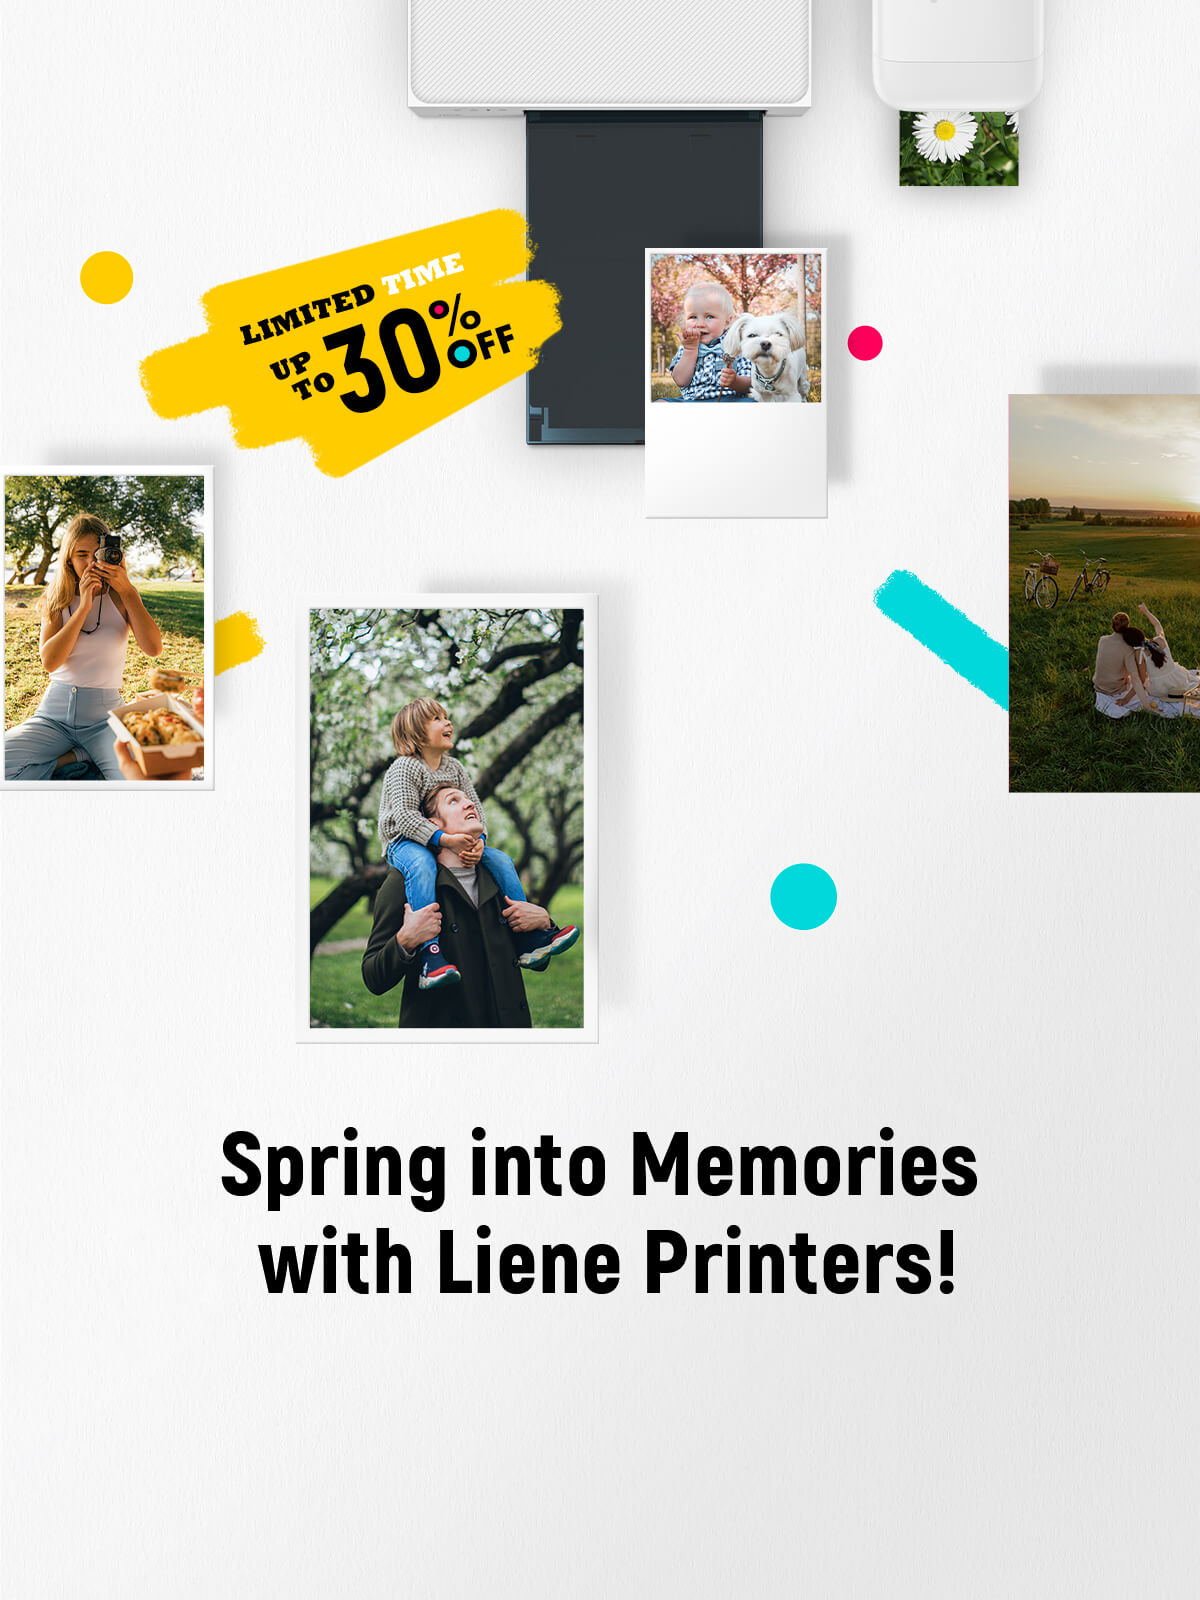 Liene printer big spring deals